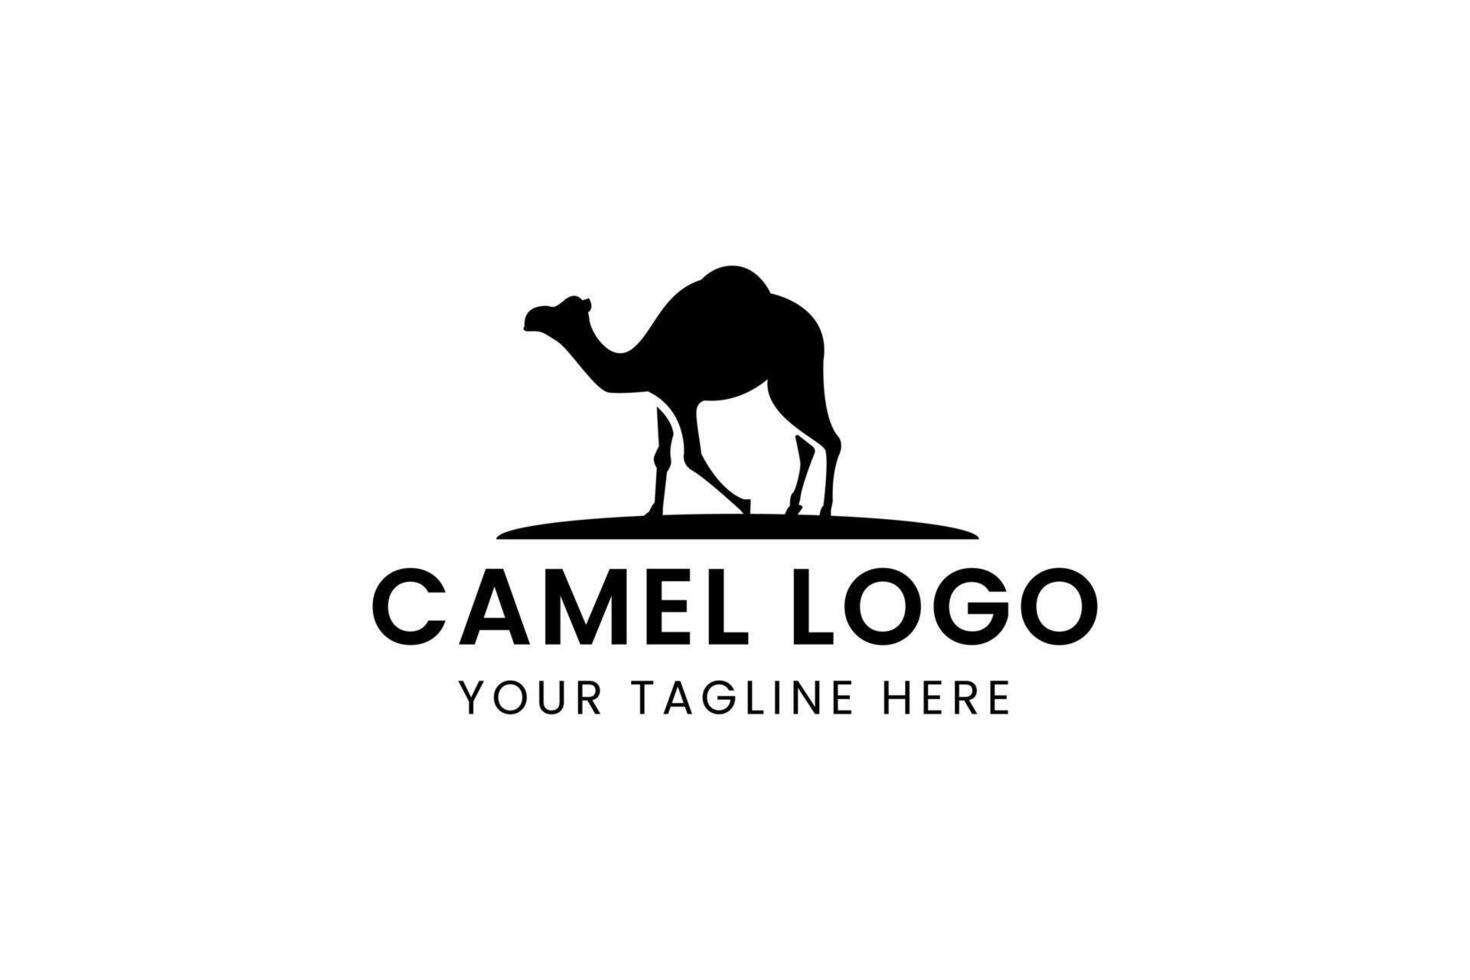 chameau logo vecteur icône illustration